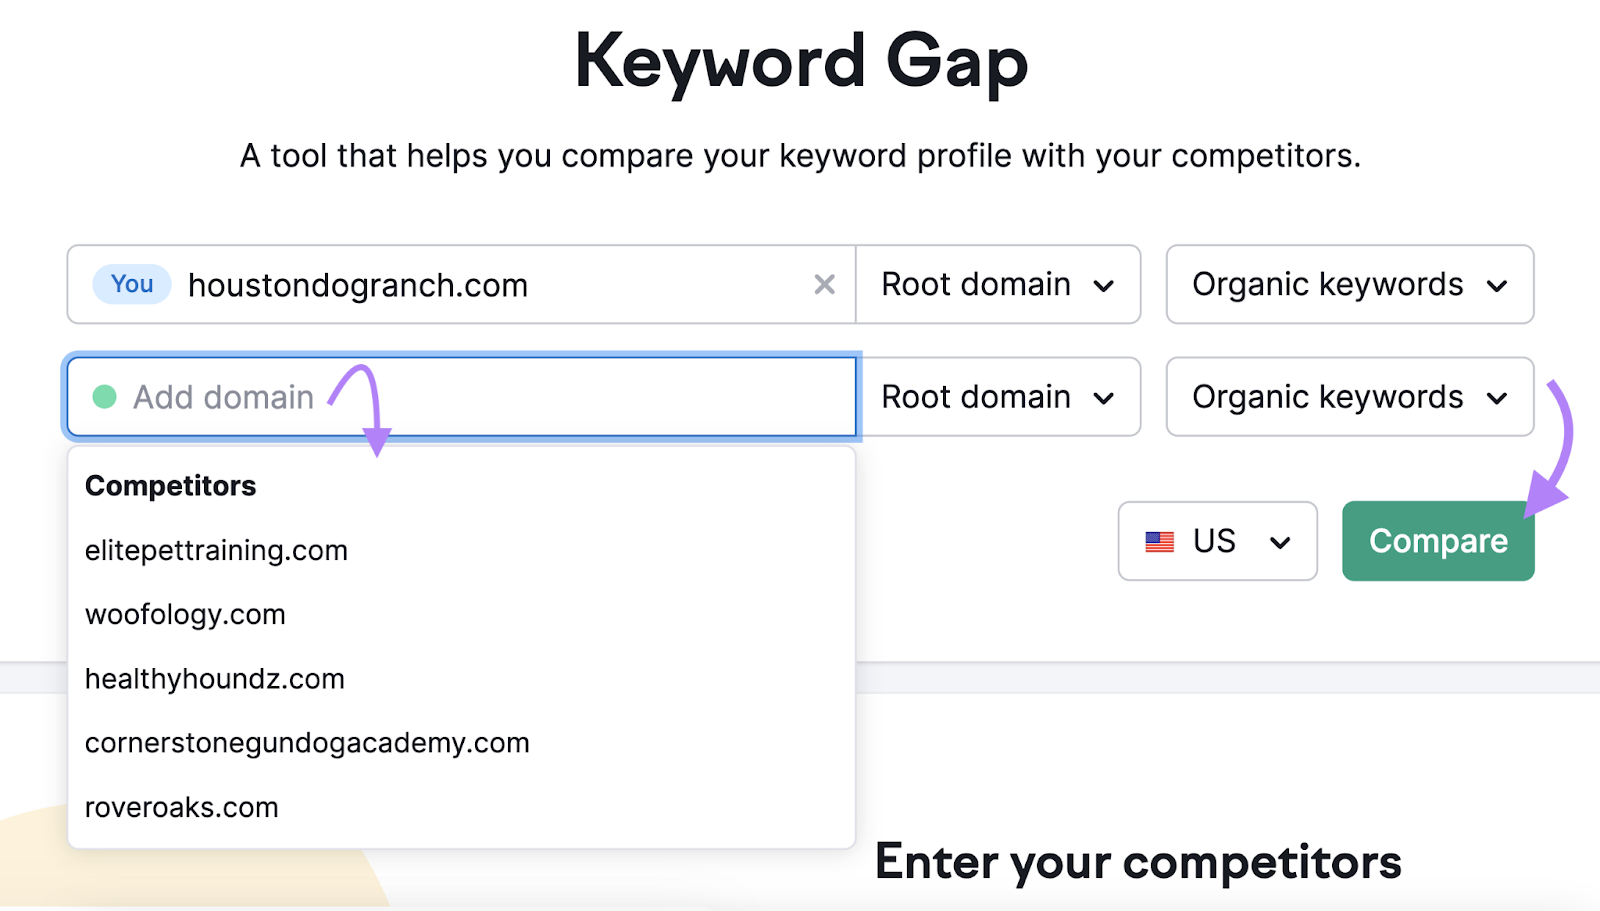 Keyword Gap tool